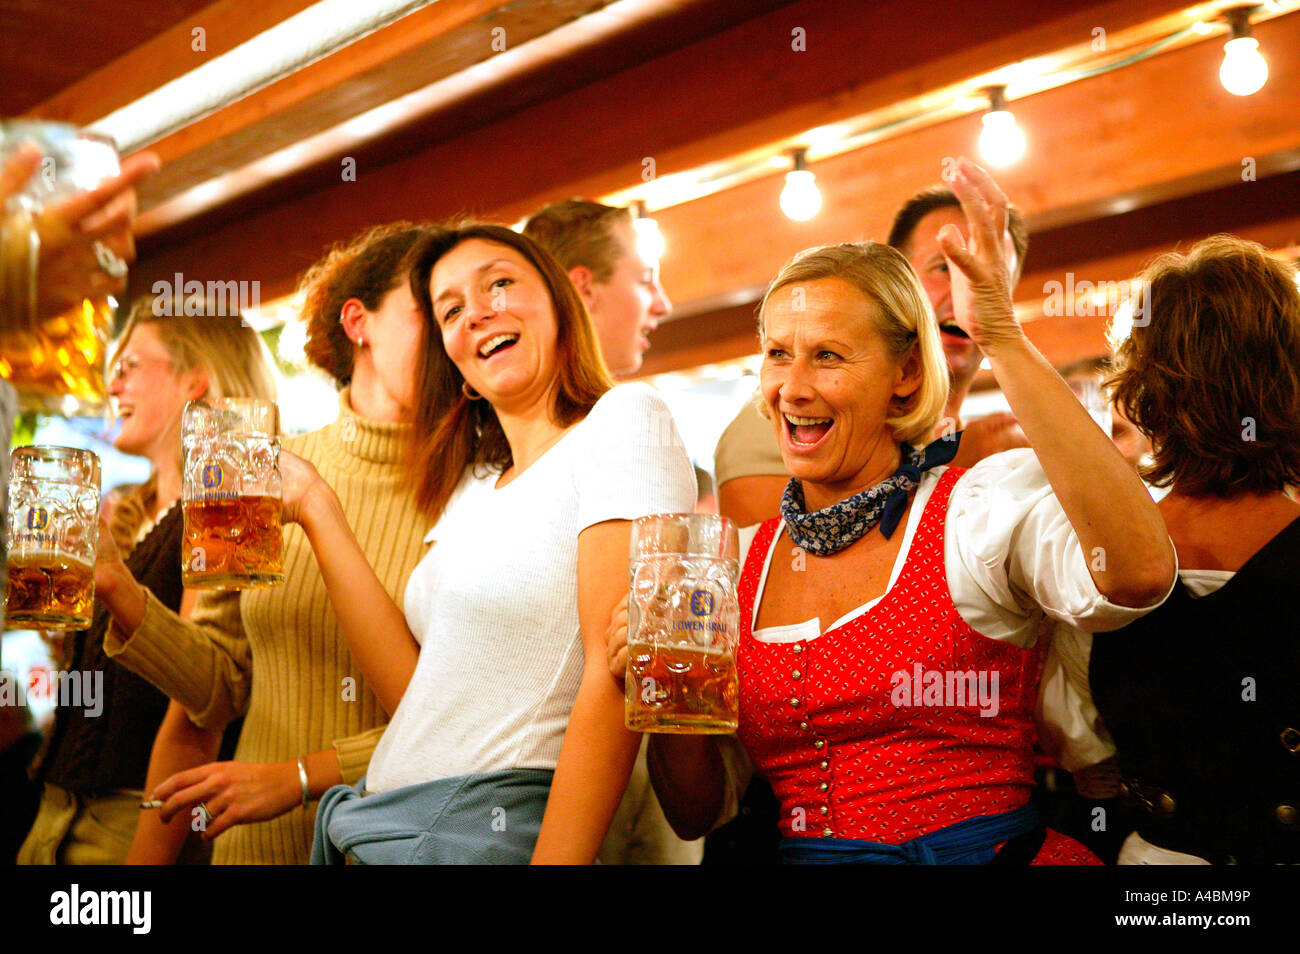 Froehliche Menschen im Bierzelt, Oktoberfest Muenchen, happy people in beer tent Oktoberfest in Munich Stock Photo